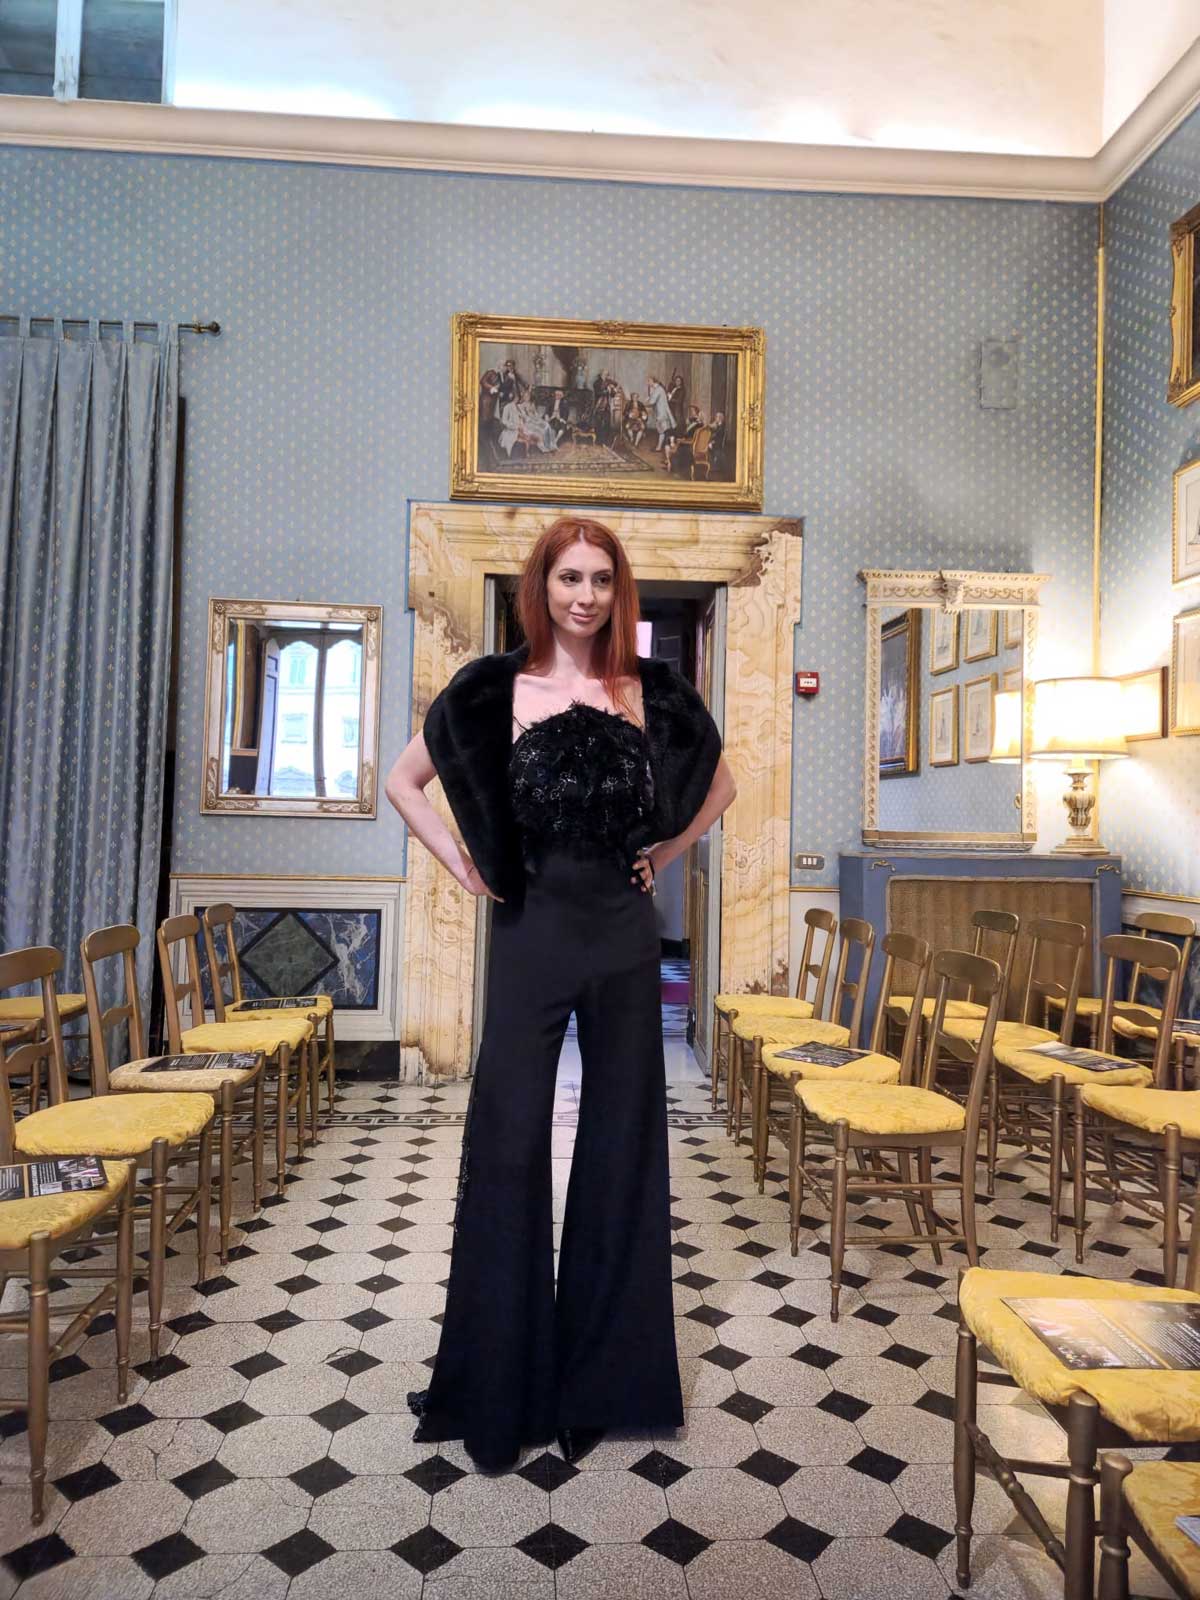 Mod’Art Roma - Il fascino dei colori - sfilata modelle nello storico Palazzo Ferrajoli - evento d’alta moda con gli eleganti abiti di Elins moda modella con vestito elegante nero